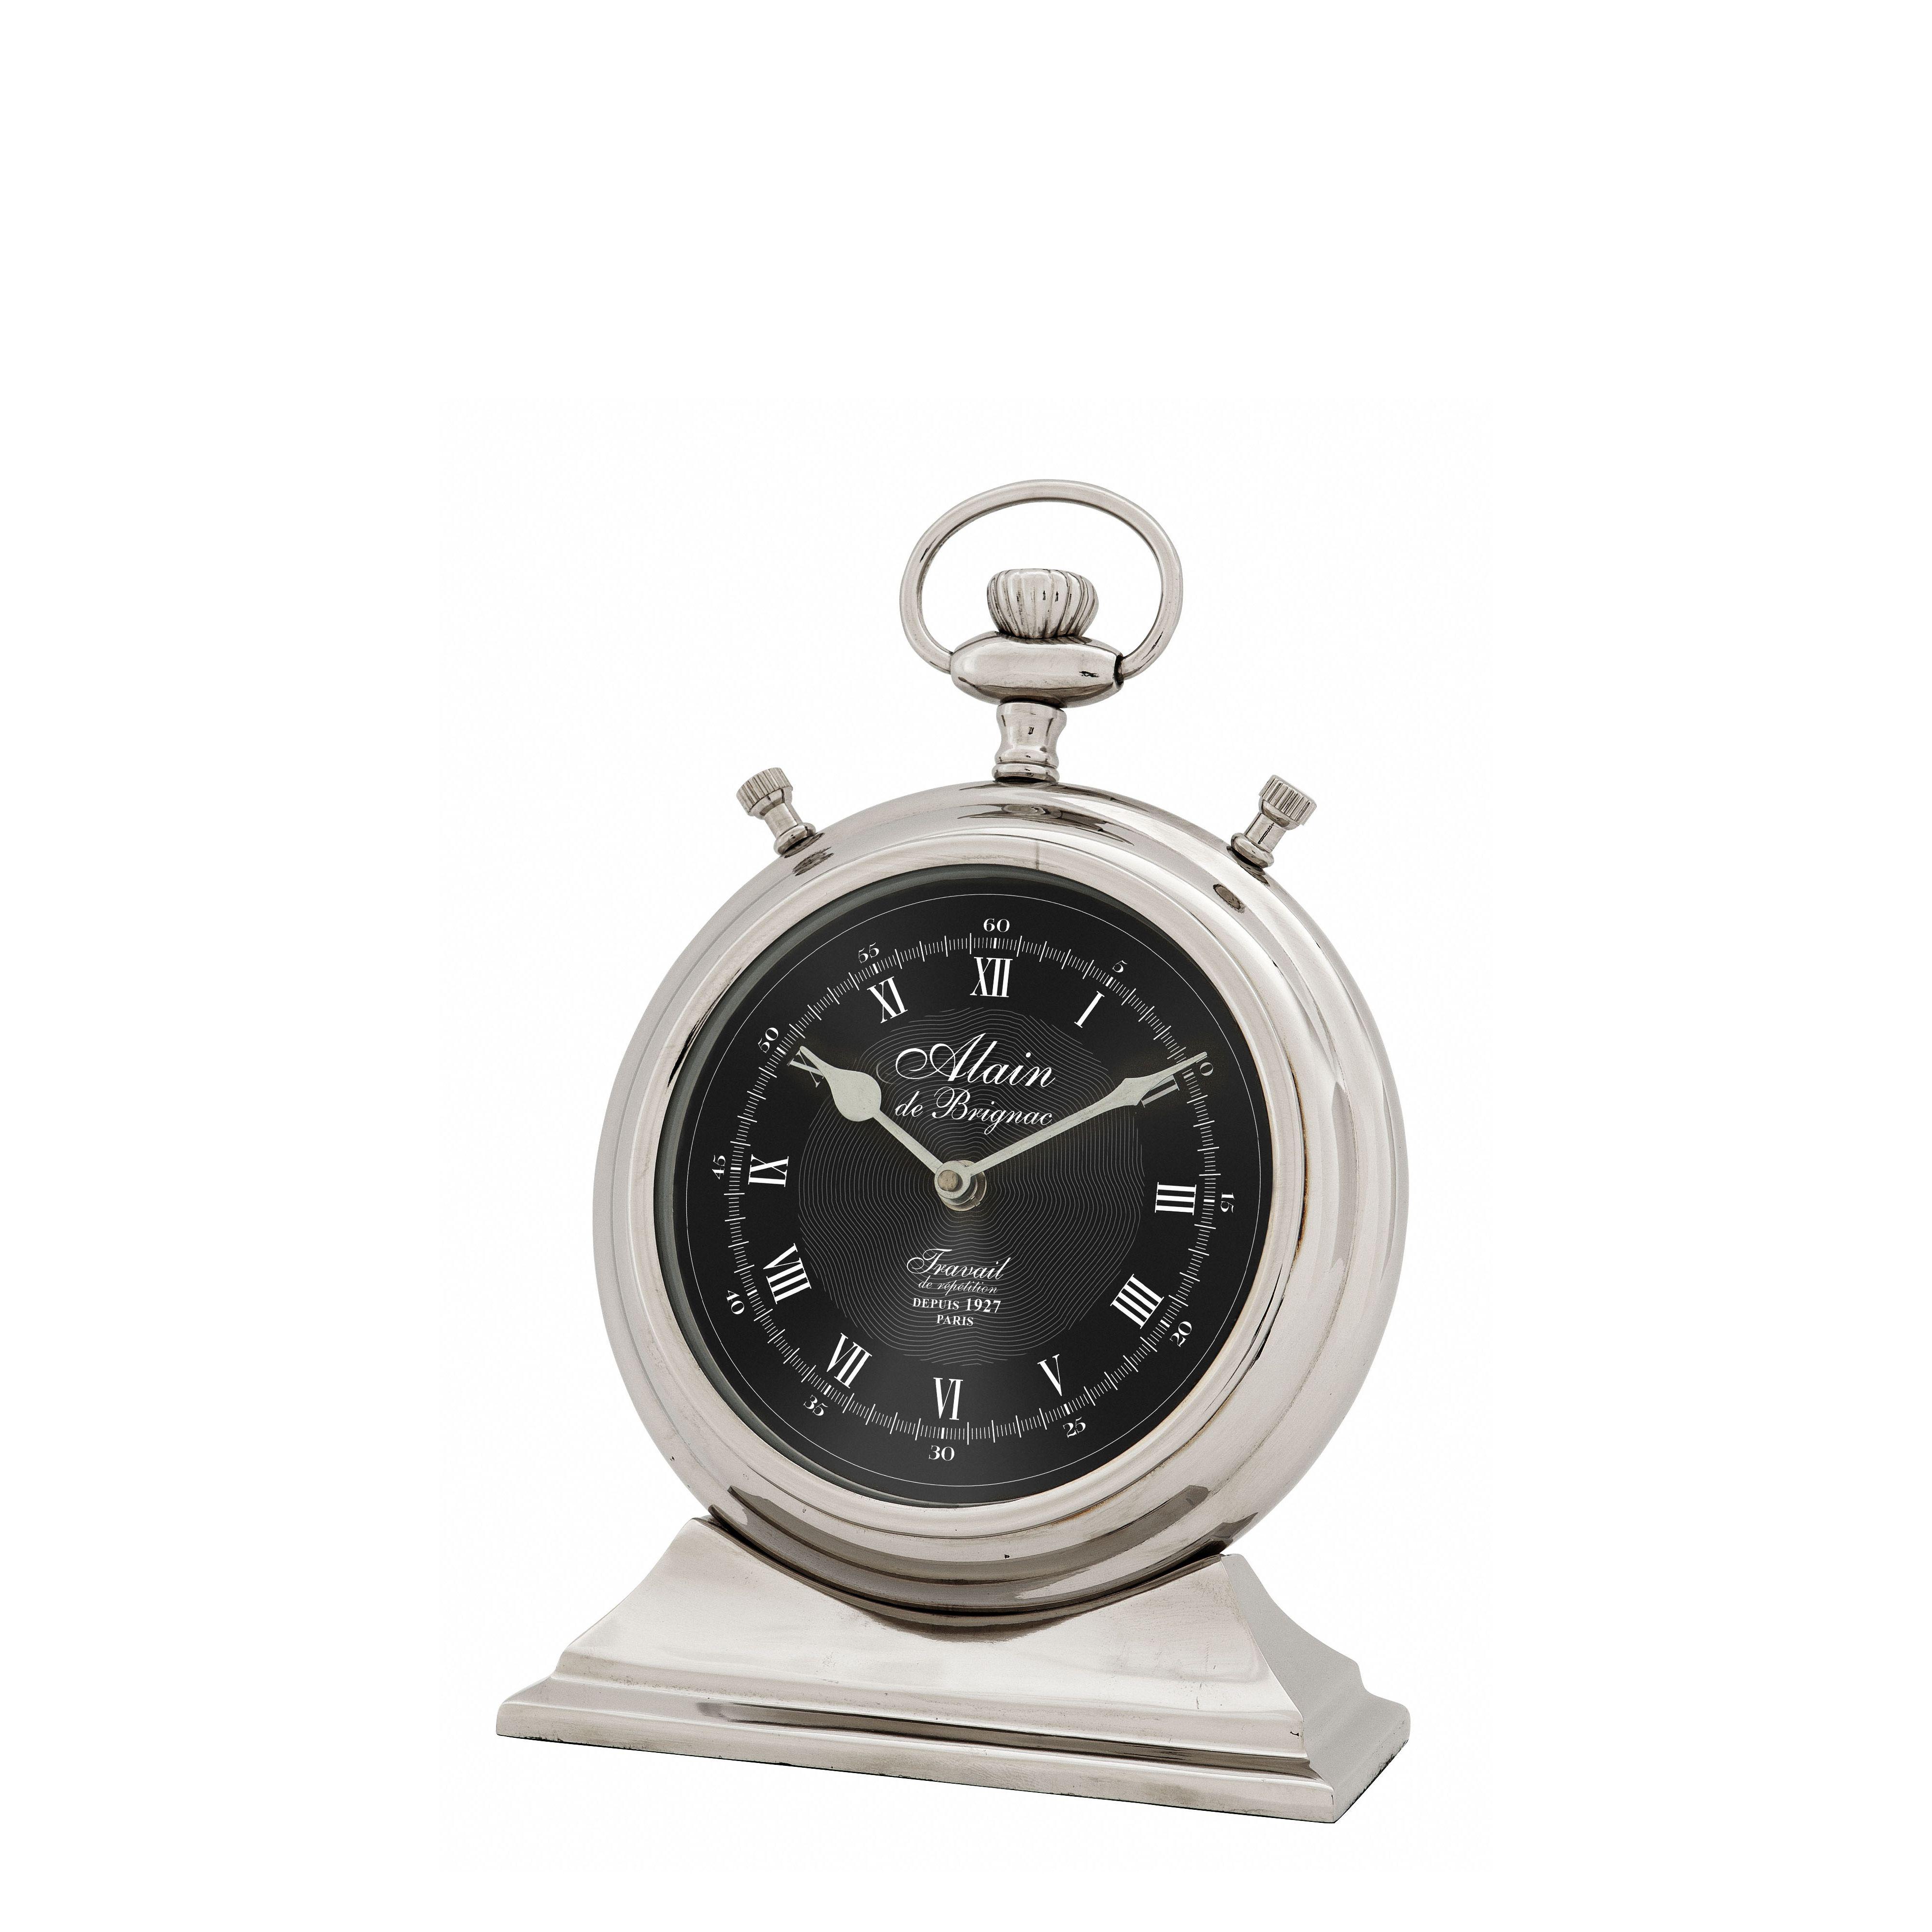 Купить Часы Clock Alain в интернет-магазине roooms.ru